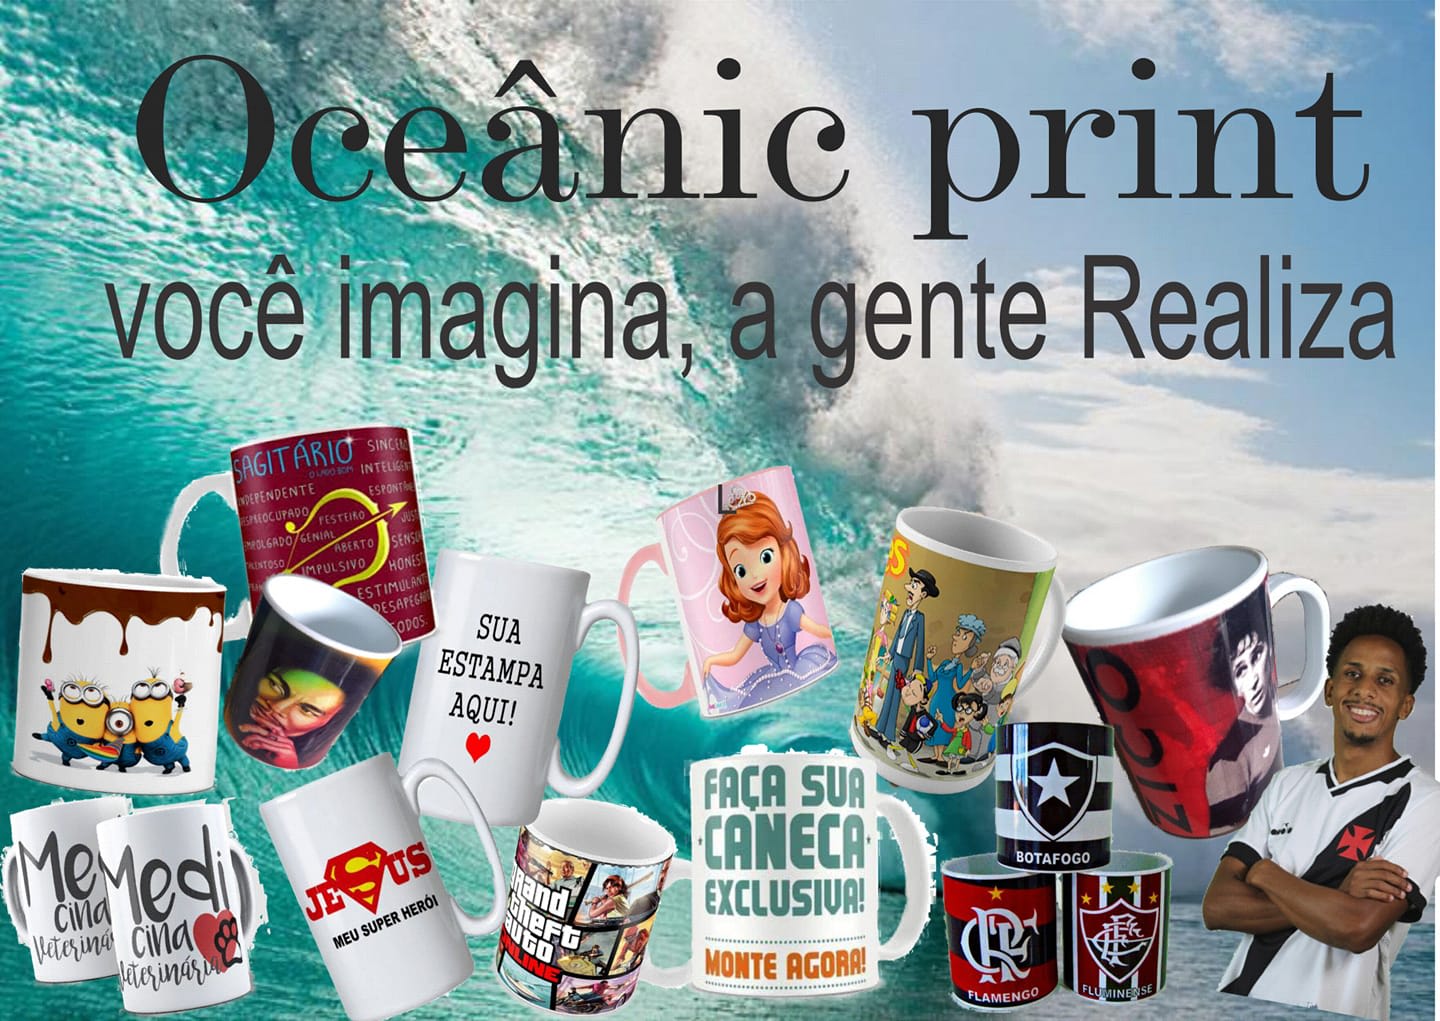 Oceanic Print